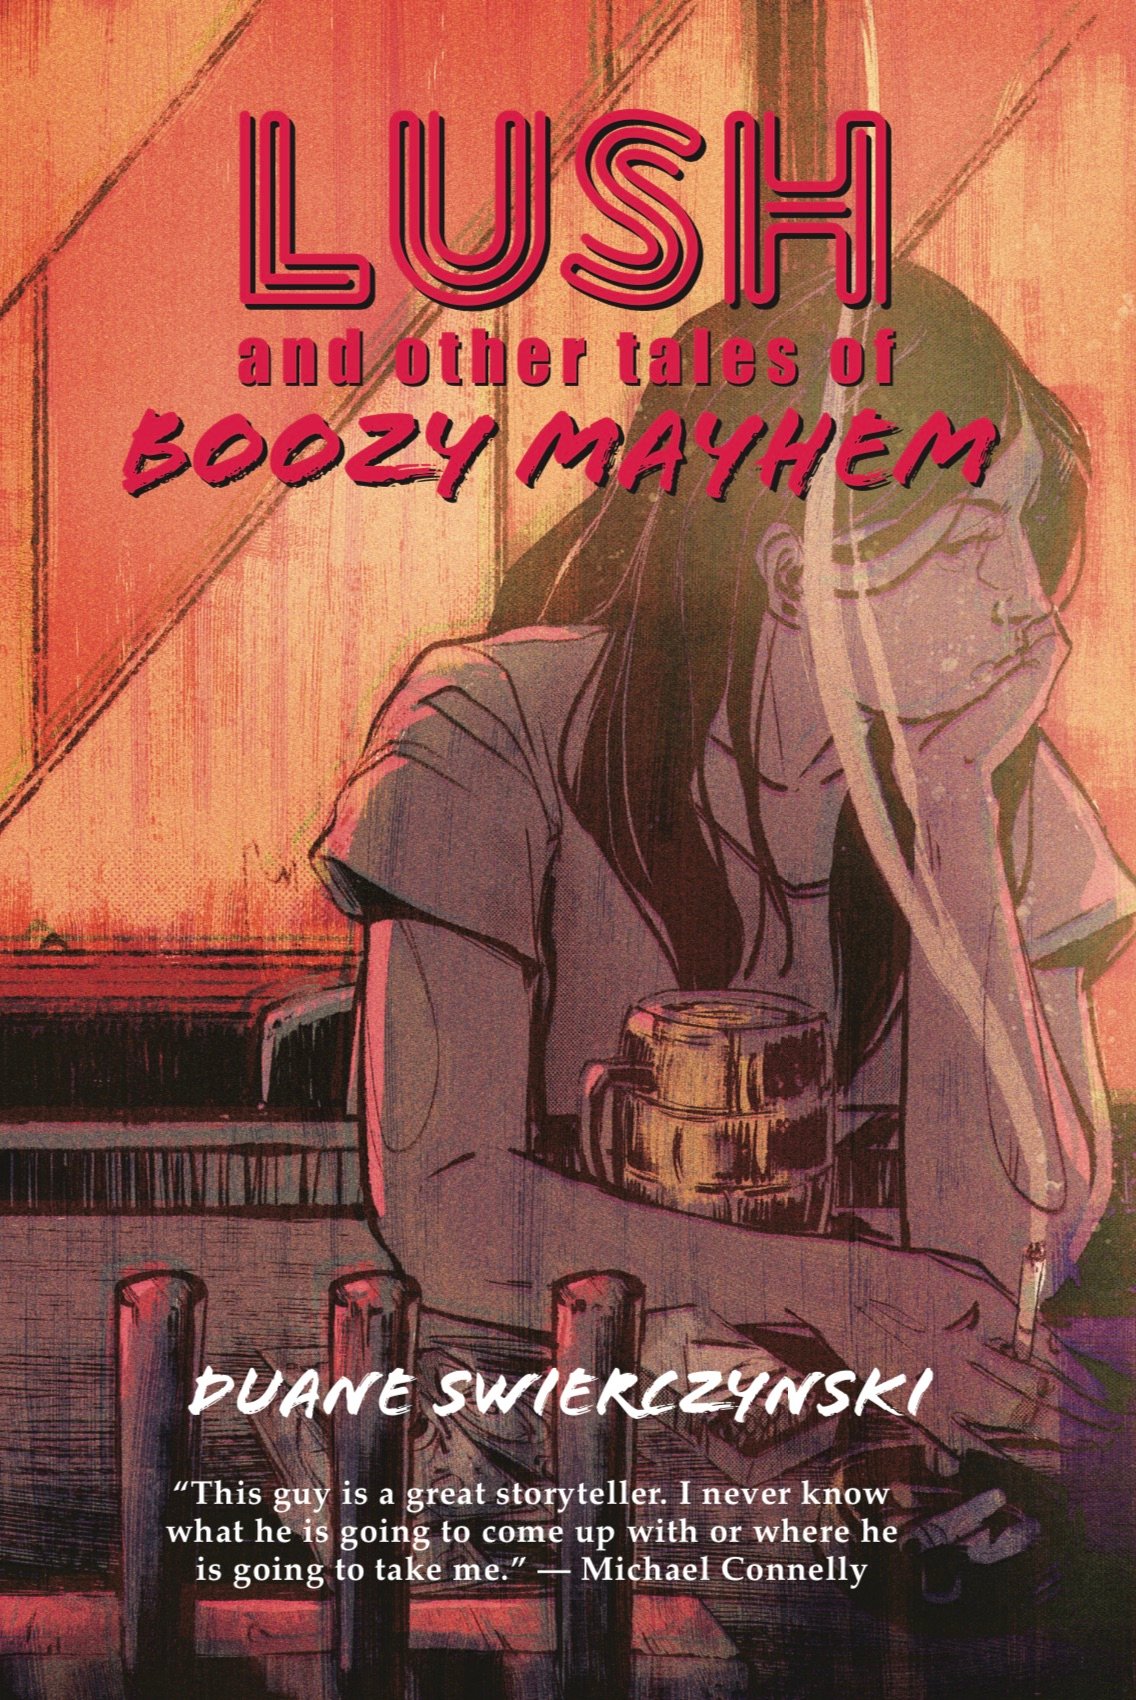 Lush and other tales of Boozy Mayhem by Duane Swierczynski